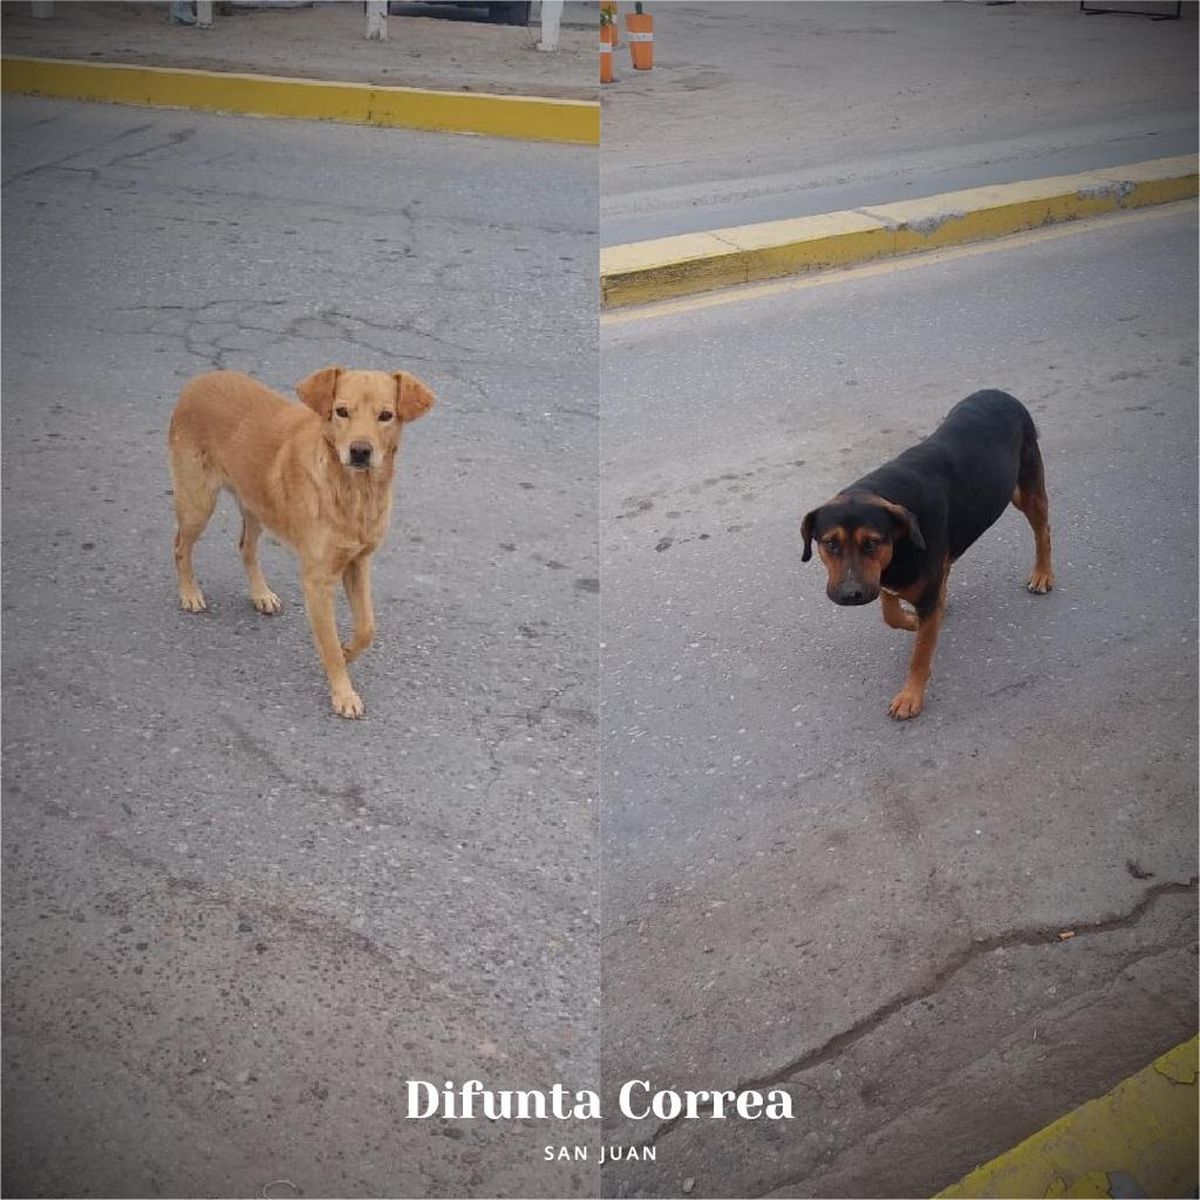 Estiman que abandonan por día un perro en la Difunta Correa